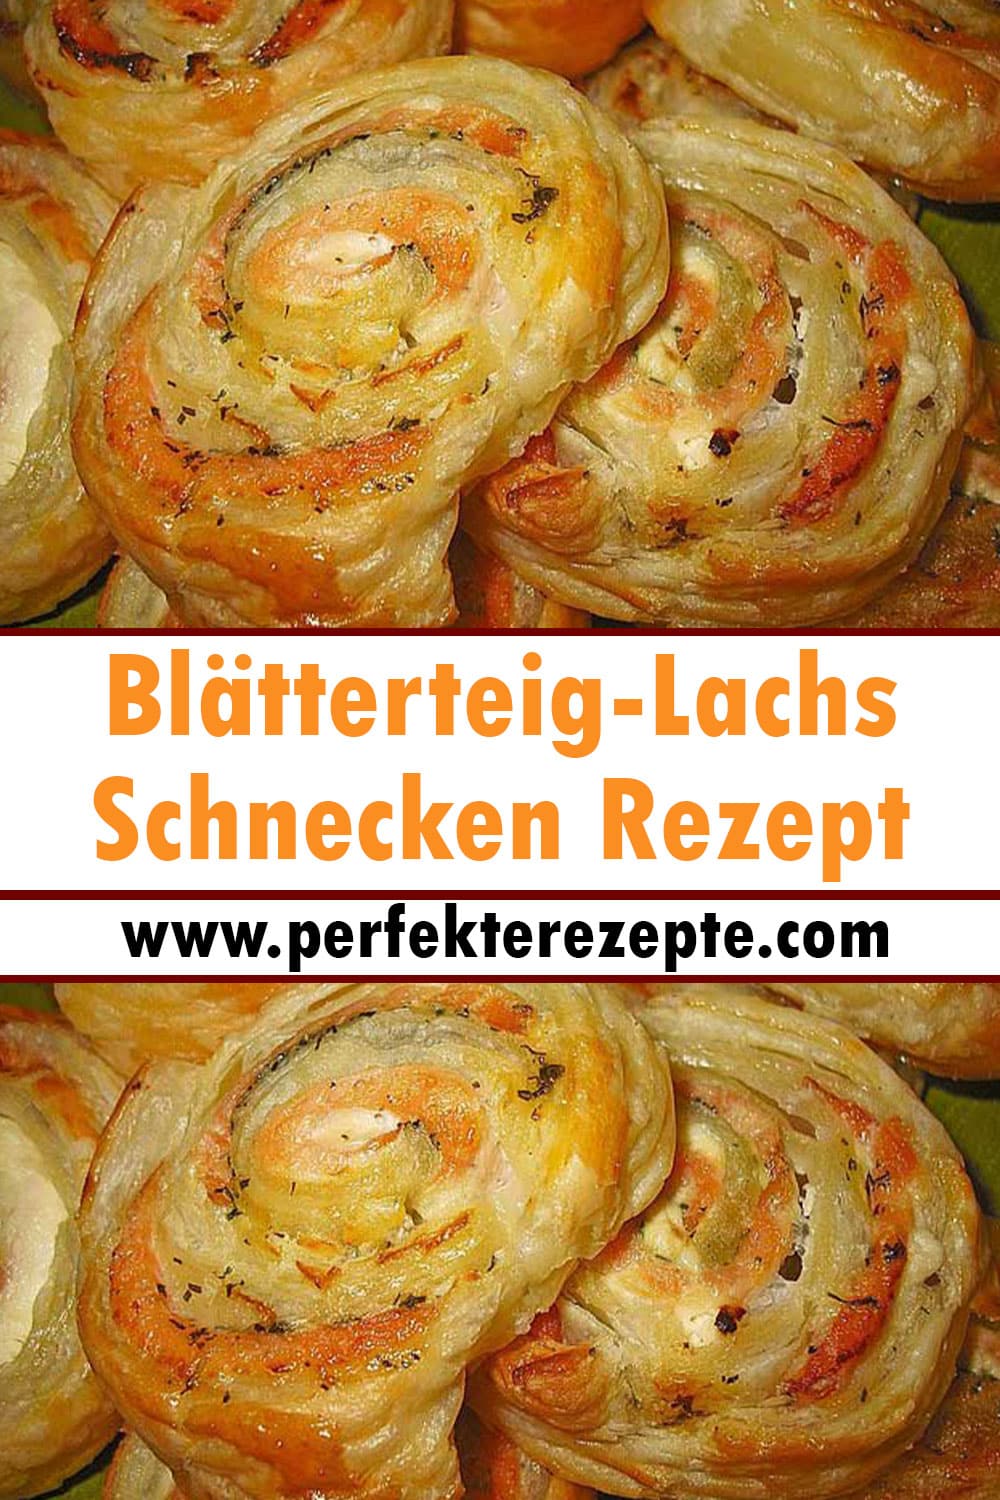 Blätterteig-Lachs-Schnecken Rezept